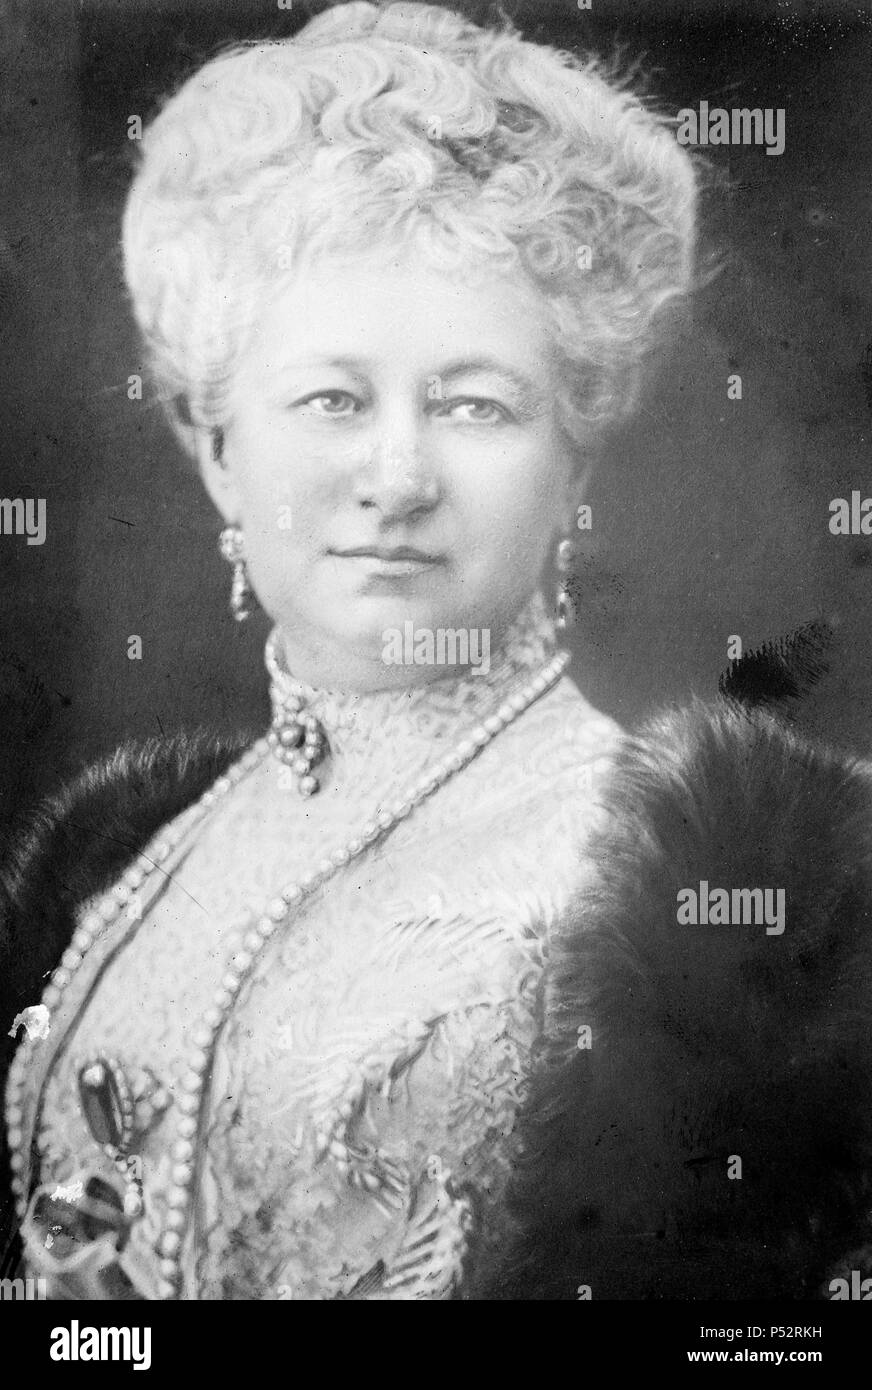 augusta-victoria-de-schleswig-holstein-1858-1921-la-ultima-emperatriz-alemana-y-esposa-del-kaiser-wilhelm-ii-quien-murio-en-el-exilio-tras-la-abdicacion-de-su-marido-p52rkh.jpg